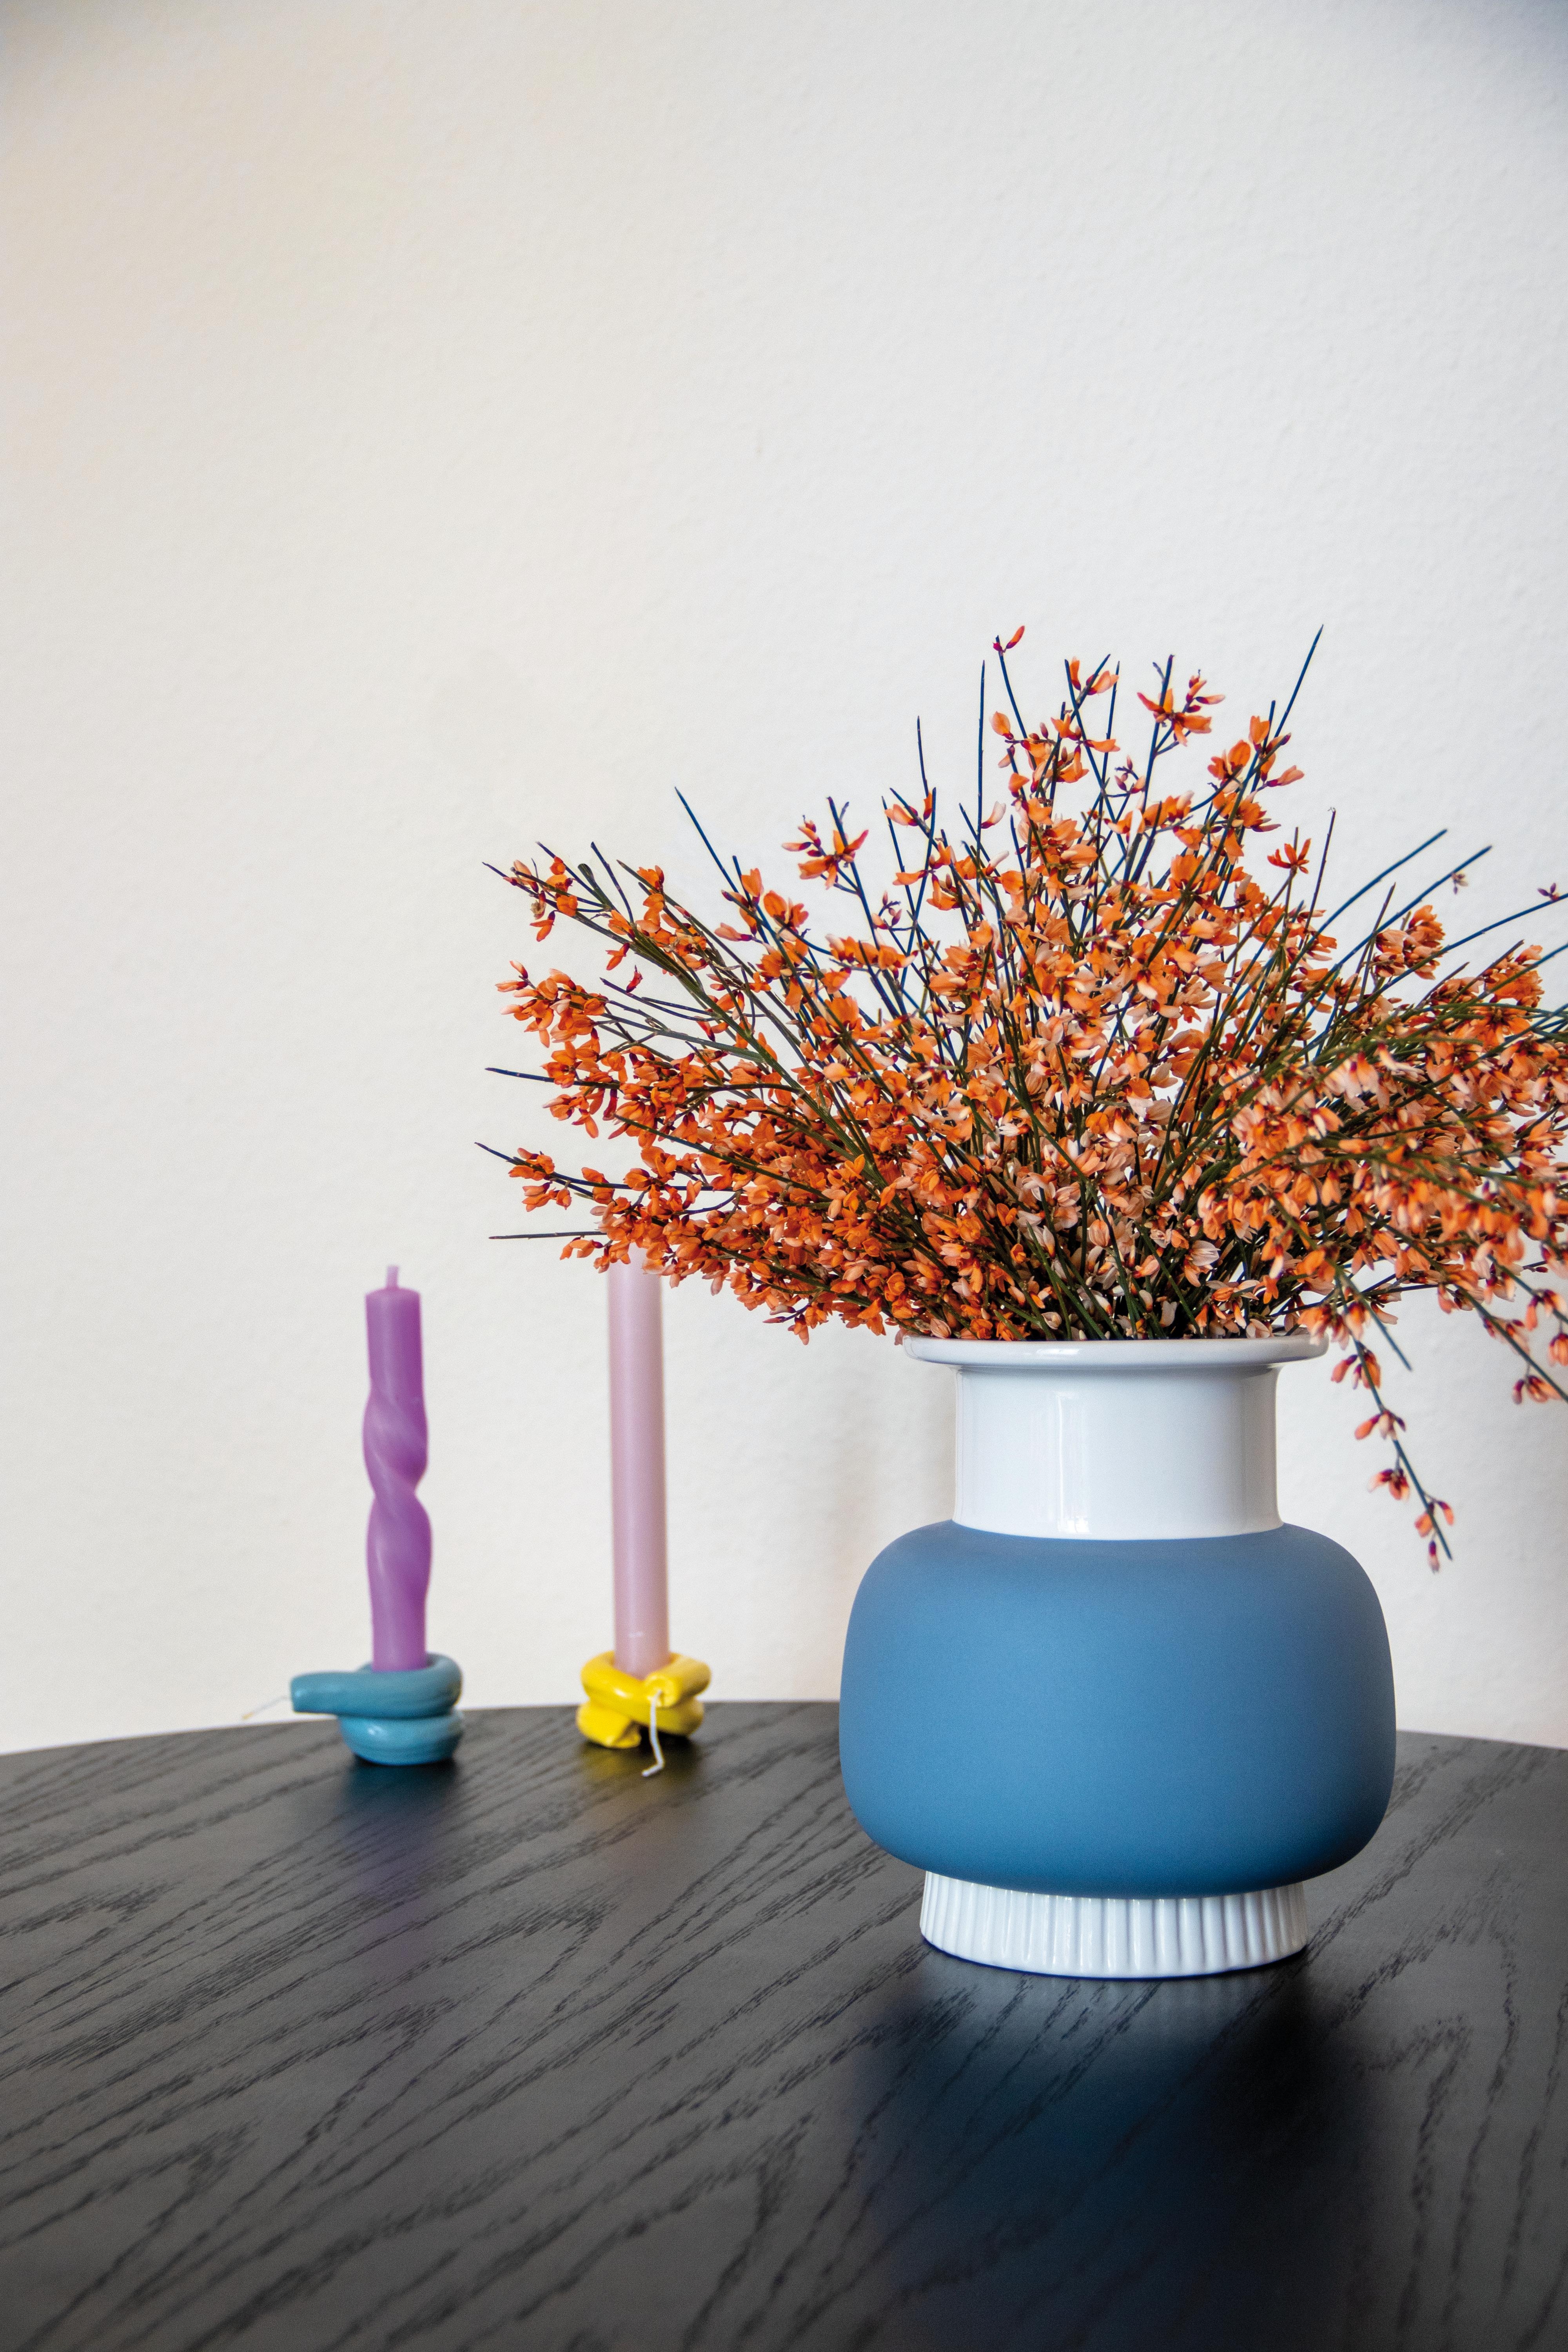 Die erste Liebe meines Lebens: #Blumen
#Blumenstrauß #Vase #Ginster #Duft #Farbenfroh #Pastell #Candycolors